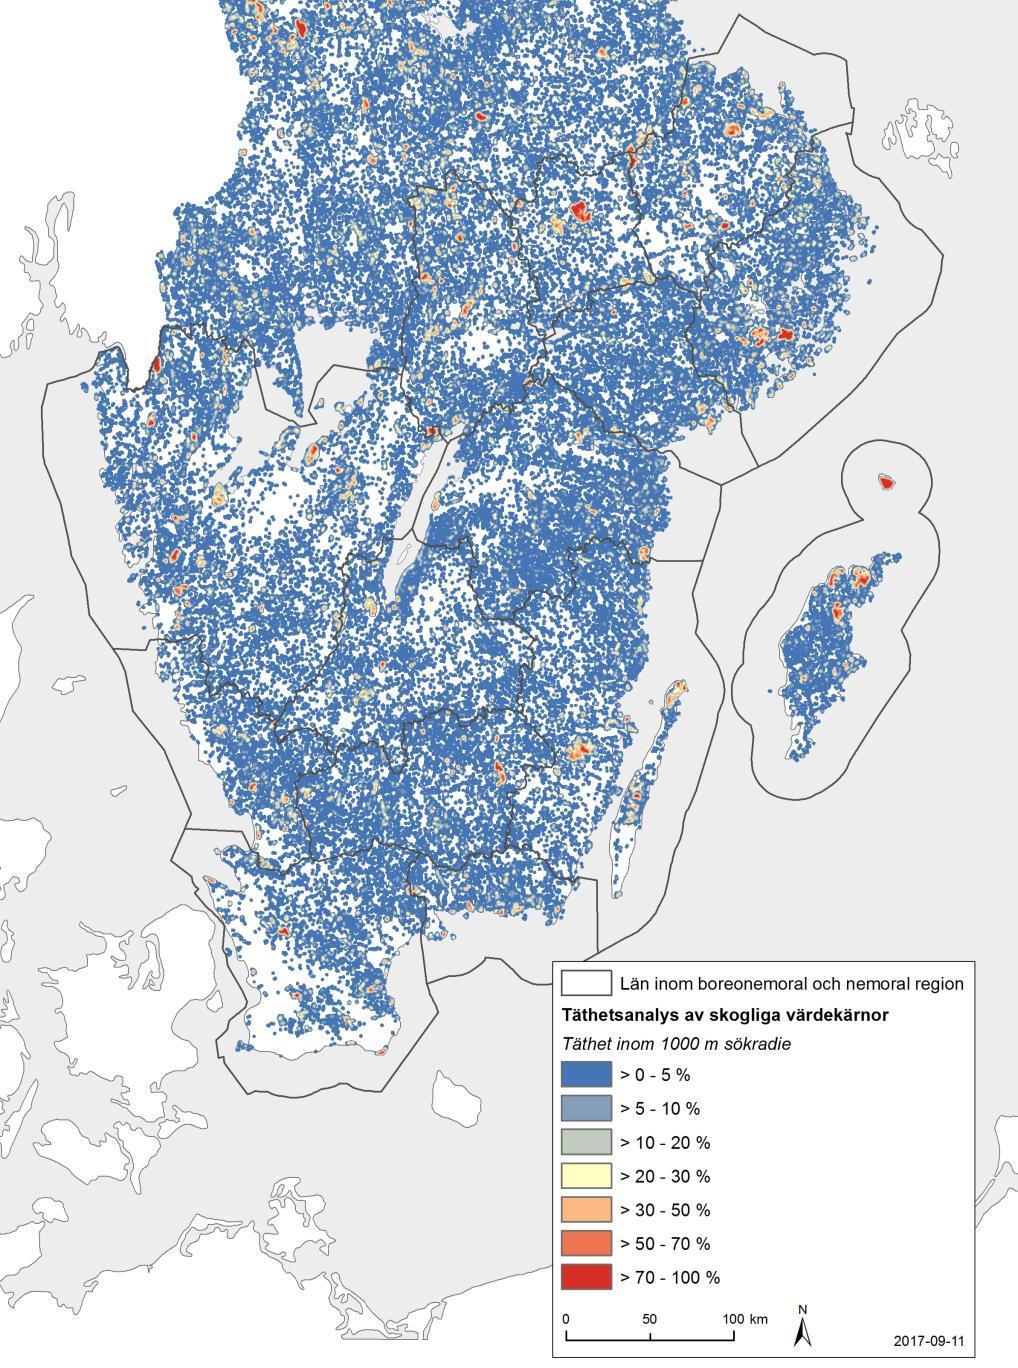 av de skogliga värdekärnorna inom analysområdet ligger innanför områden med formellt skydd, drygt 270 318 ha vilket motsvarar nästan 65 % av samtliga värdekärnor i södra Sverige. 3.2 Täthetsanalys Figur 7.